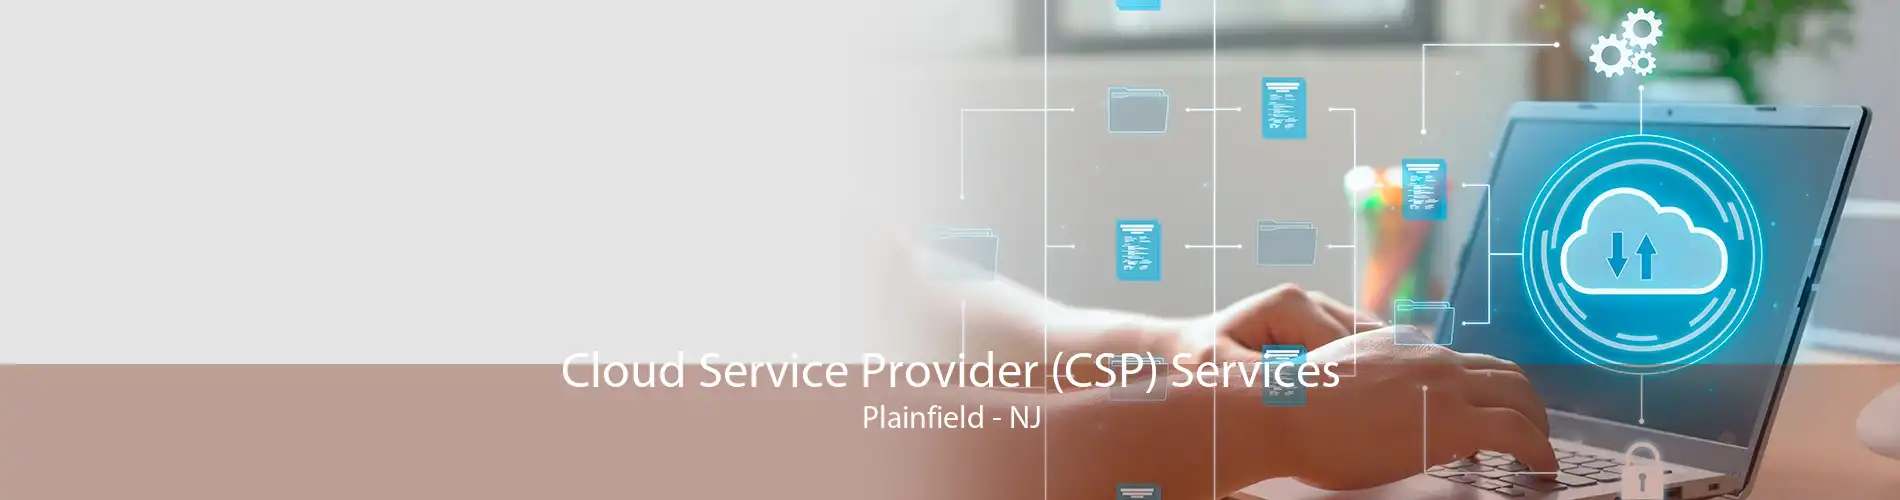 Cloud Service Provider (CSP) Services Plainfield - NJ